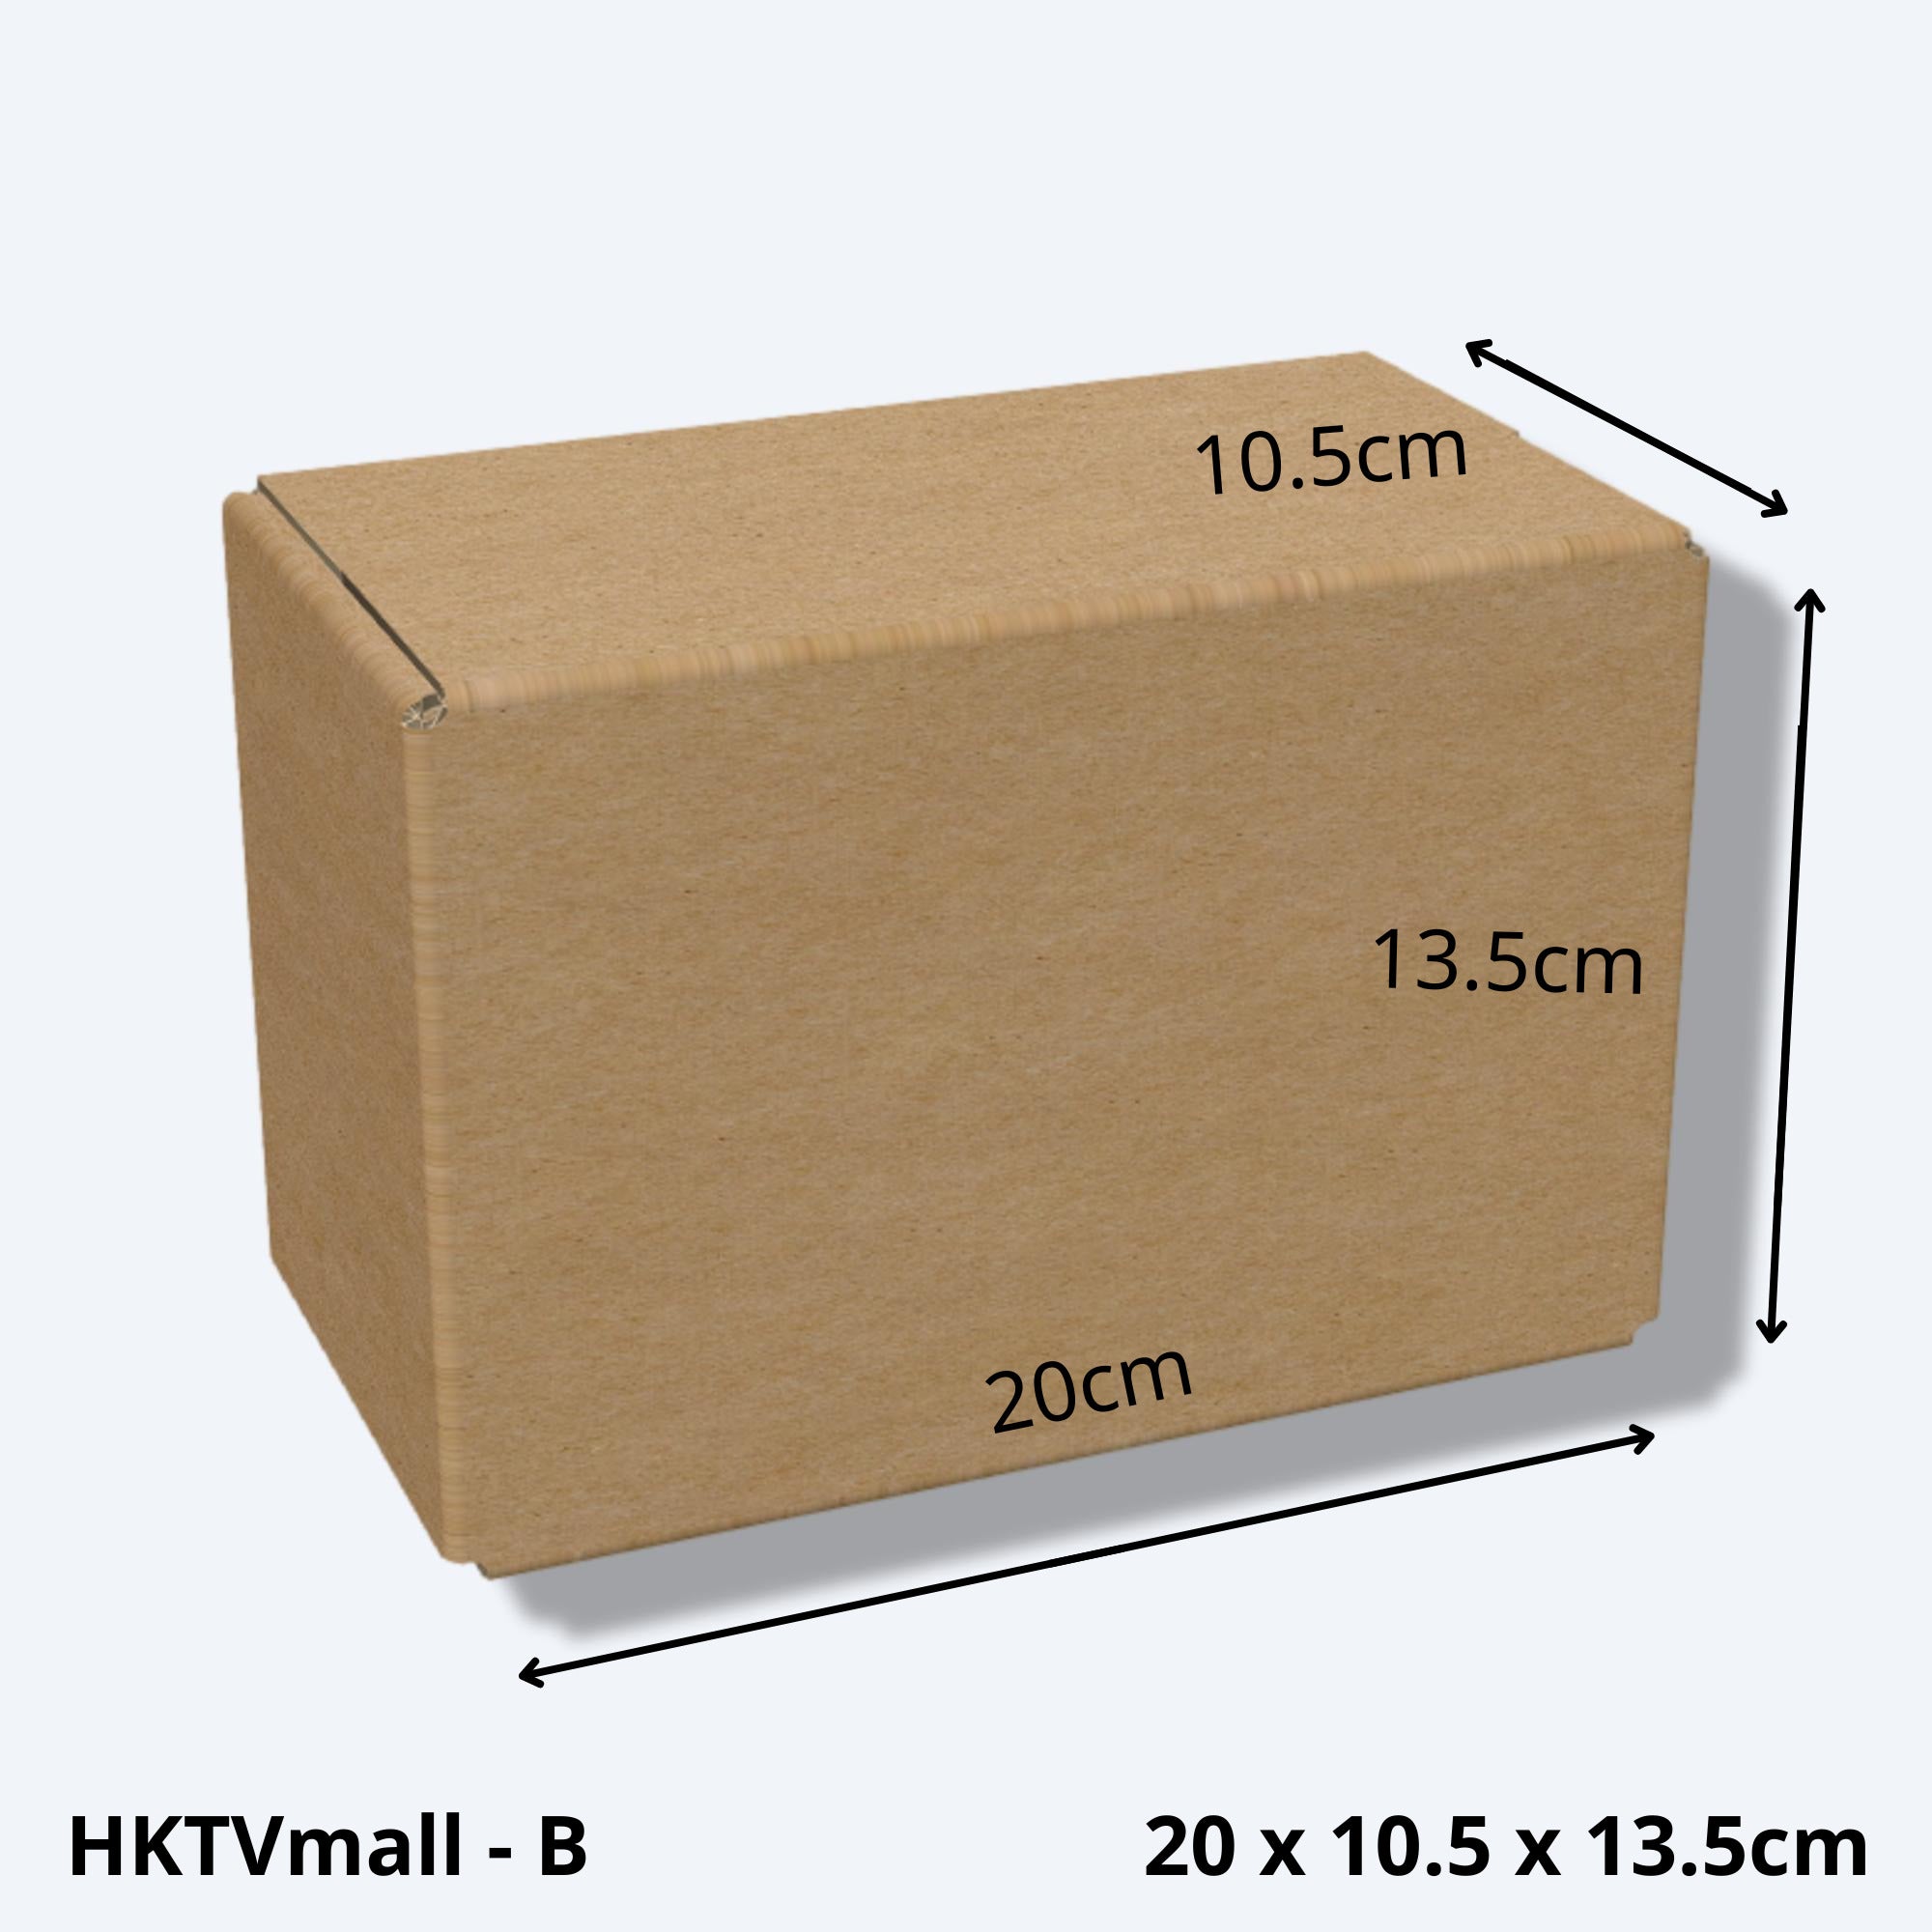 堅固的HKTVMALL尺寸B的紙箱尺寸圖，這款小型紙皮箱專為HKTV物流部設計，適用於HKTVmall商戶發貨時使用。